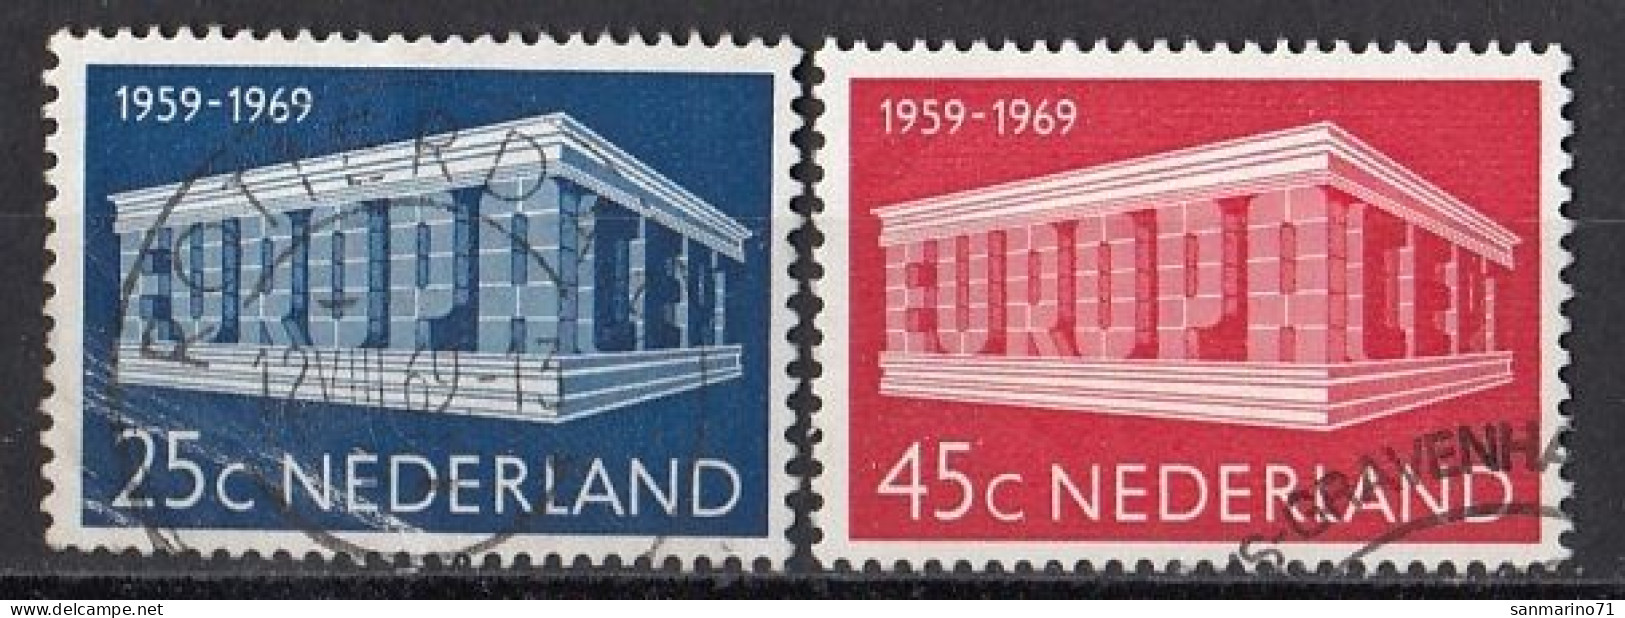 NETHERLANDS 920-921,used,falc Hinged - 1969